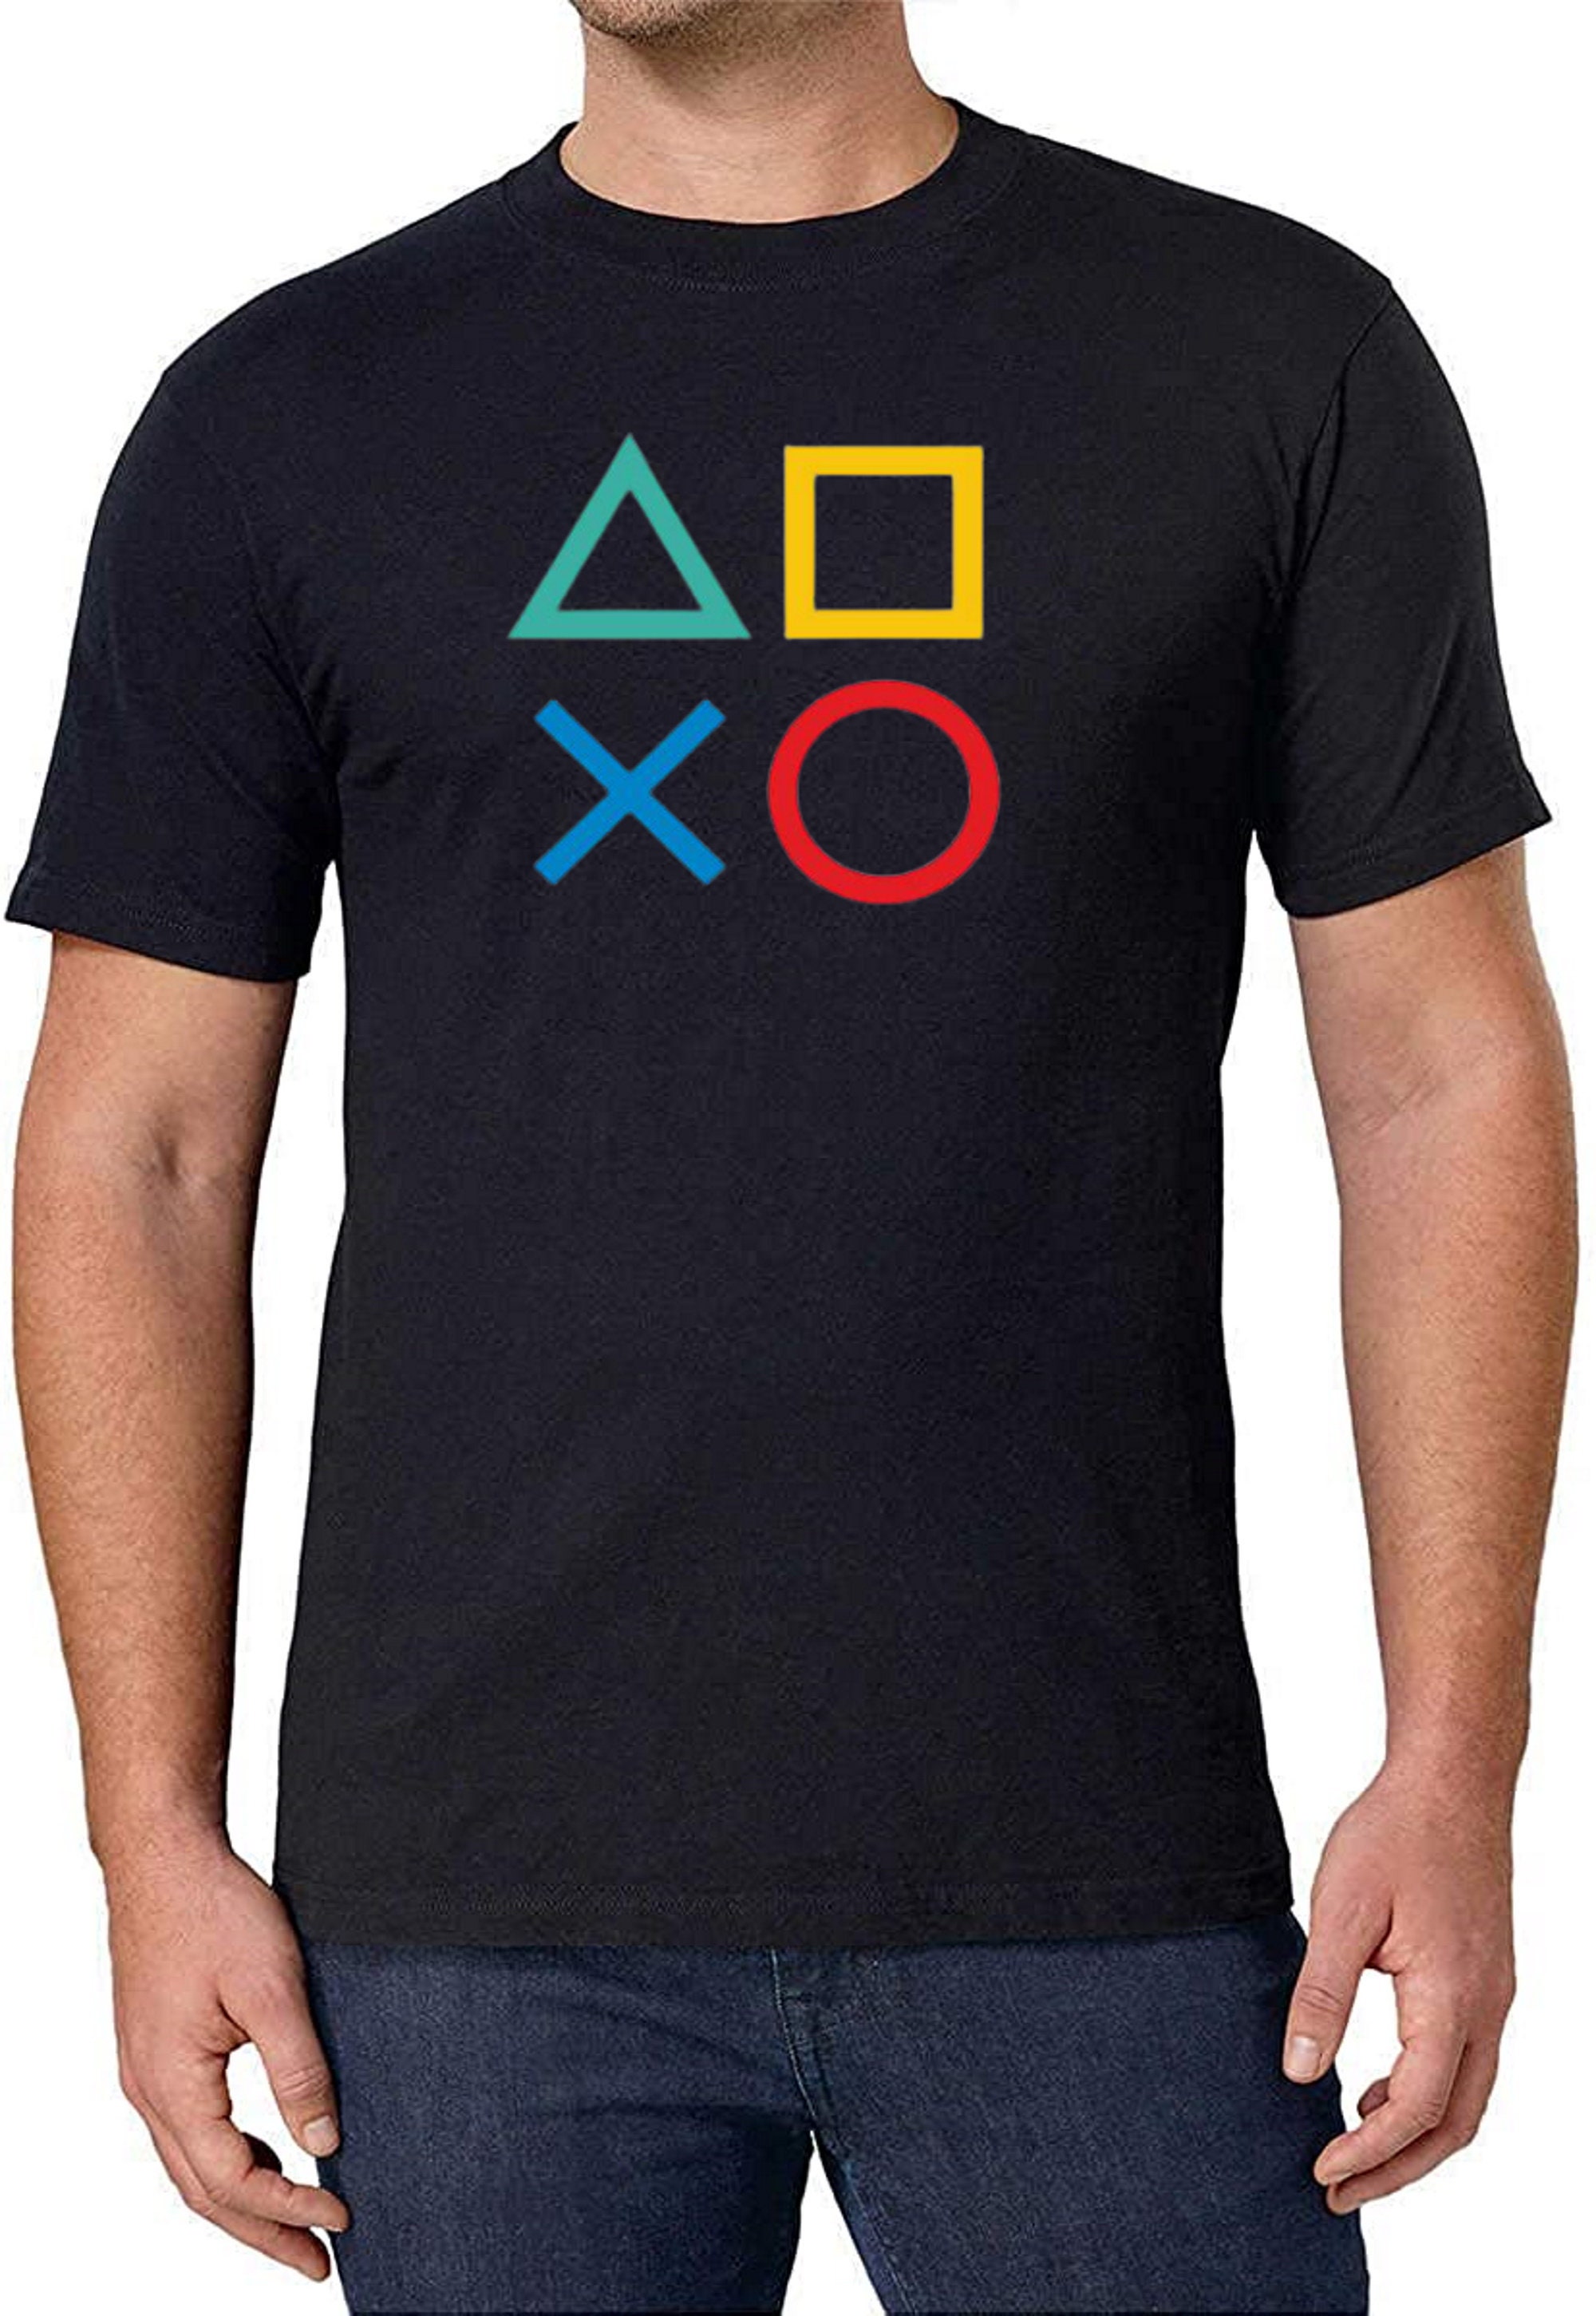 Play station shirt/ Ps5 shirt/ Playstation shirt/ PS5 gift/ | Etsy